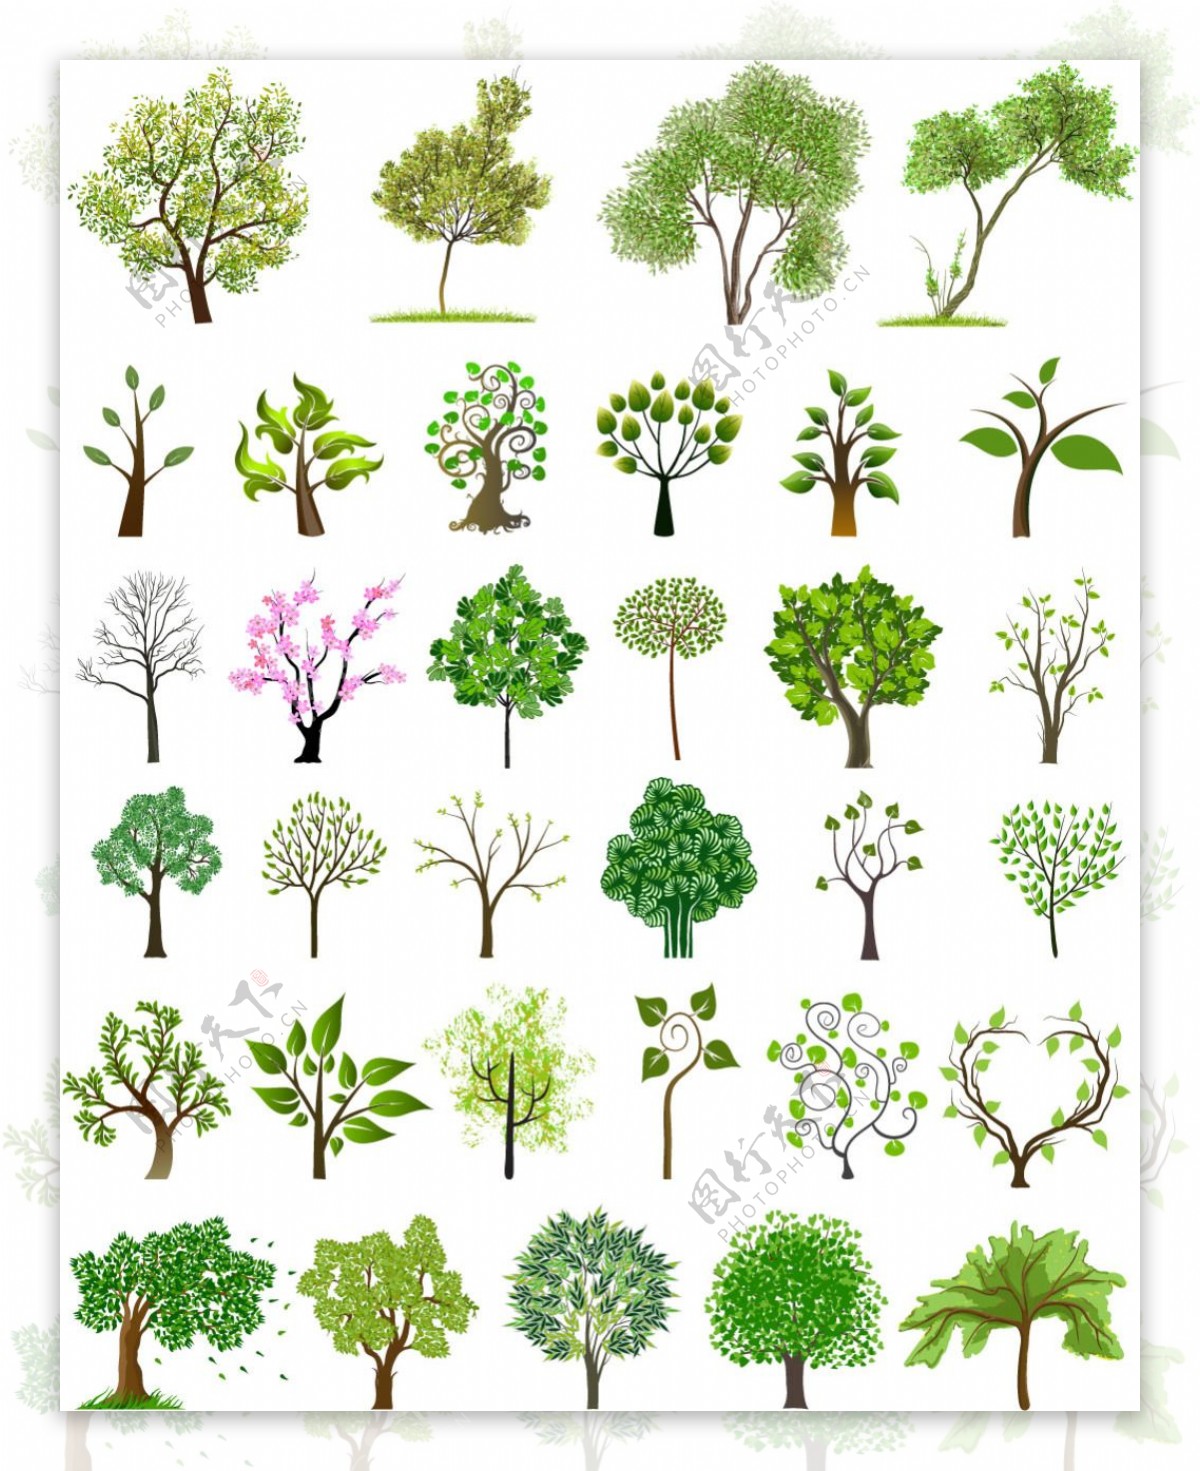 不同树种创意设计矢量图素材